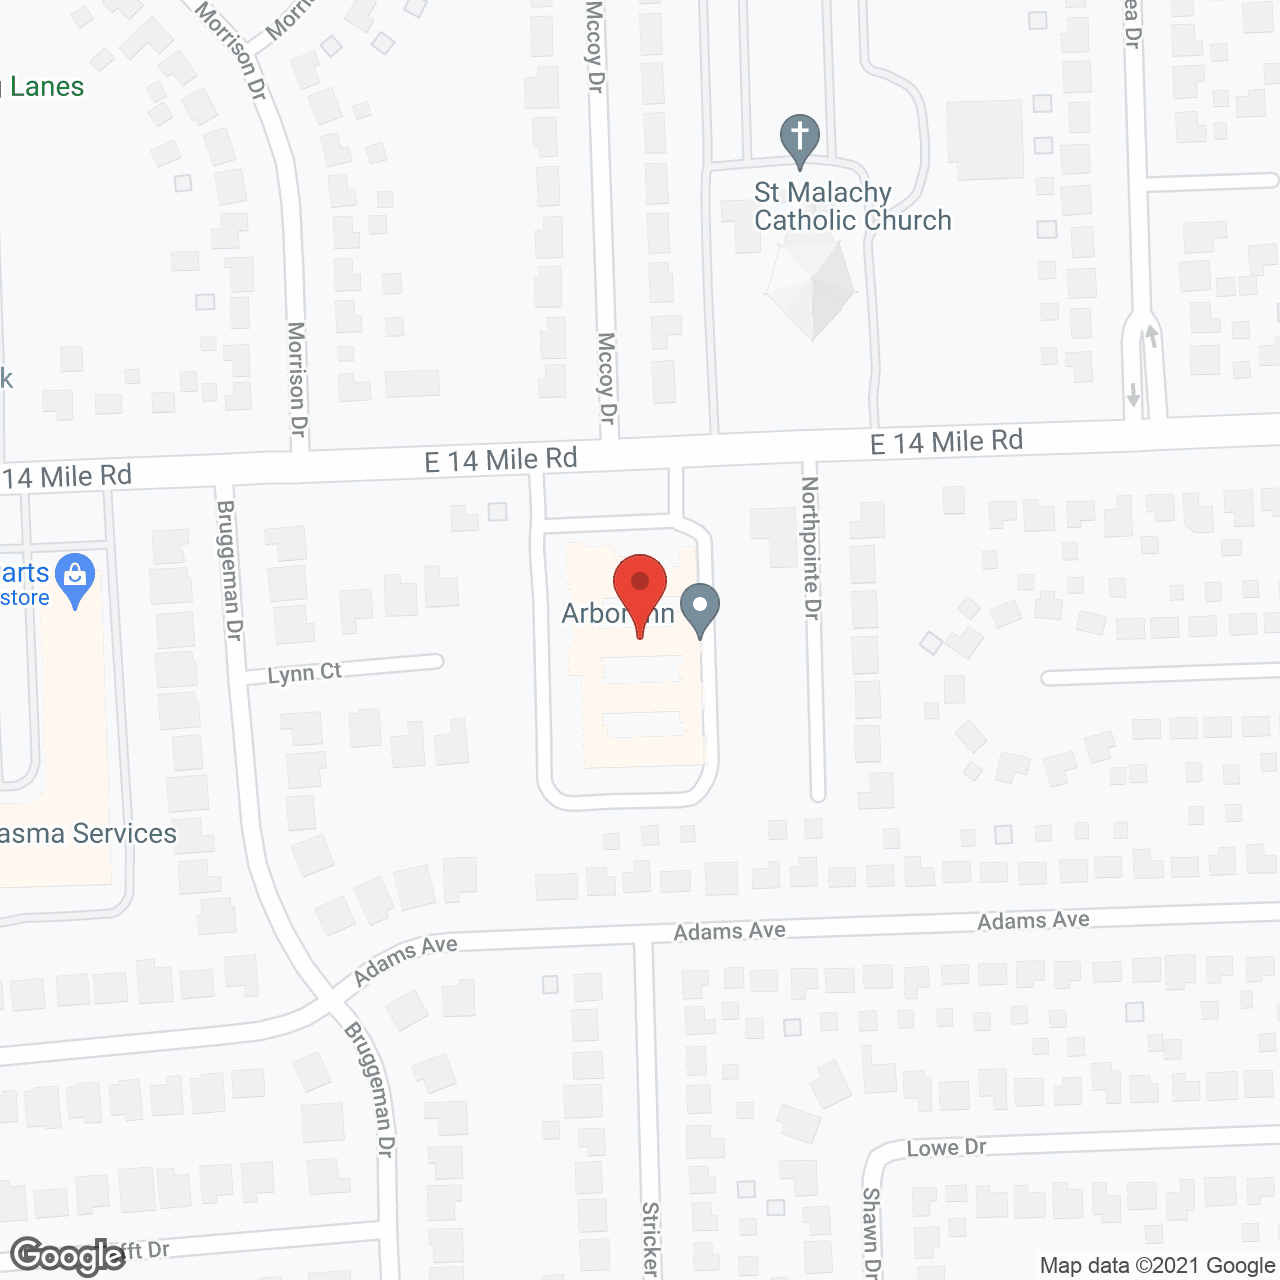 The Arbor Inn in google map